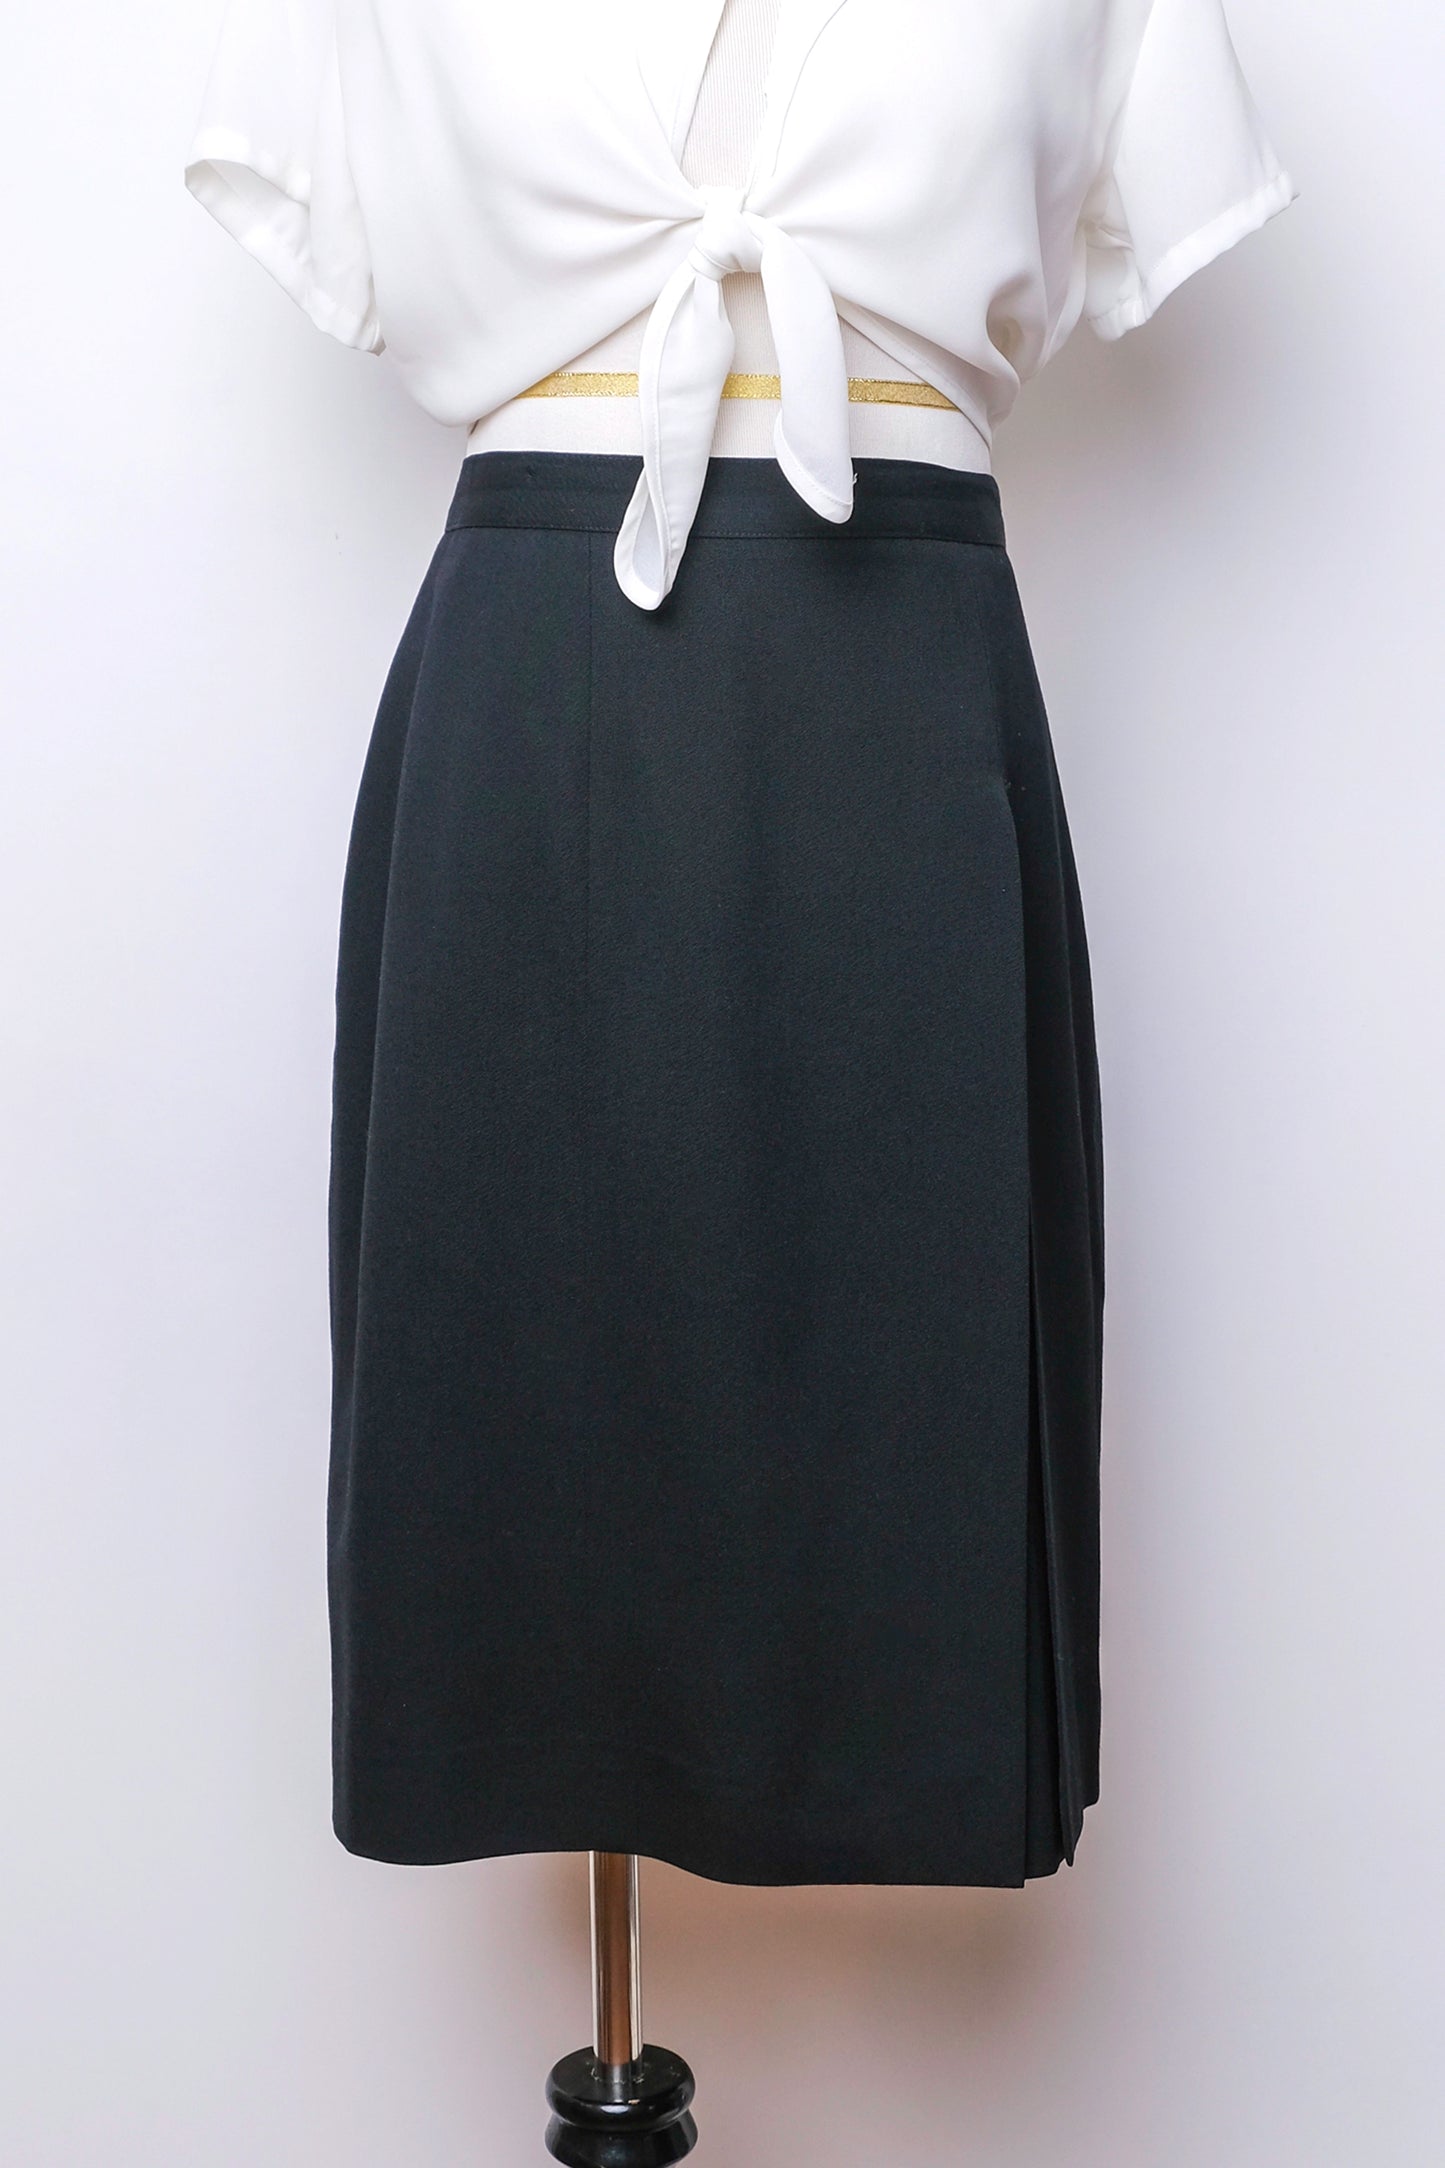 J'envie Modern Black Wool Pencil Skirt Front Overlay Slit US 10, 90's